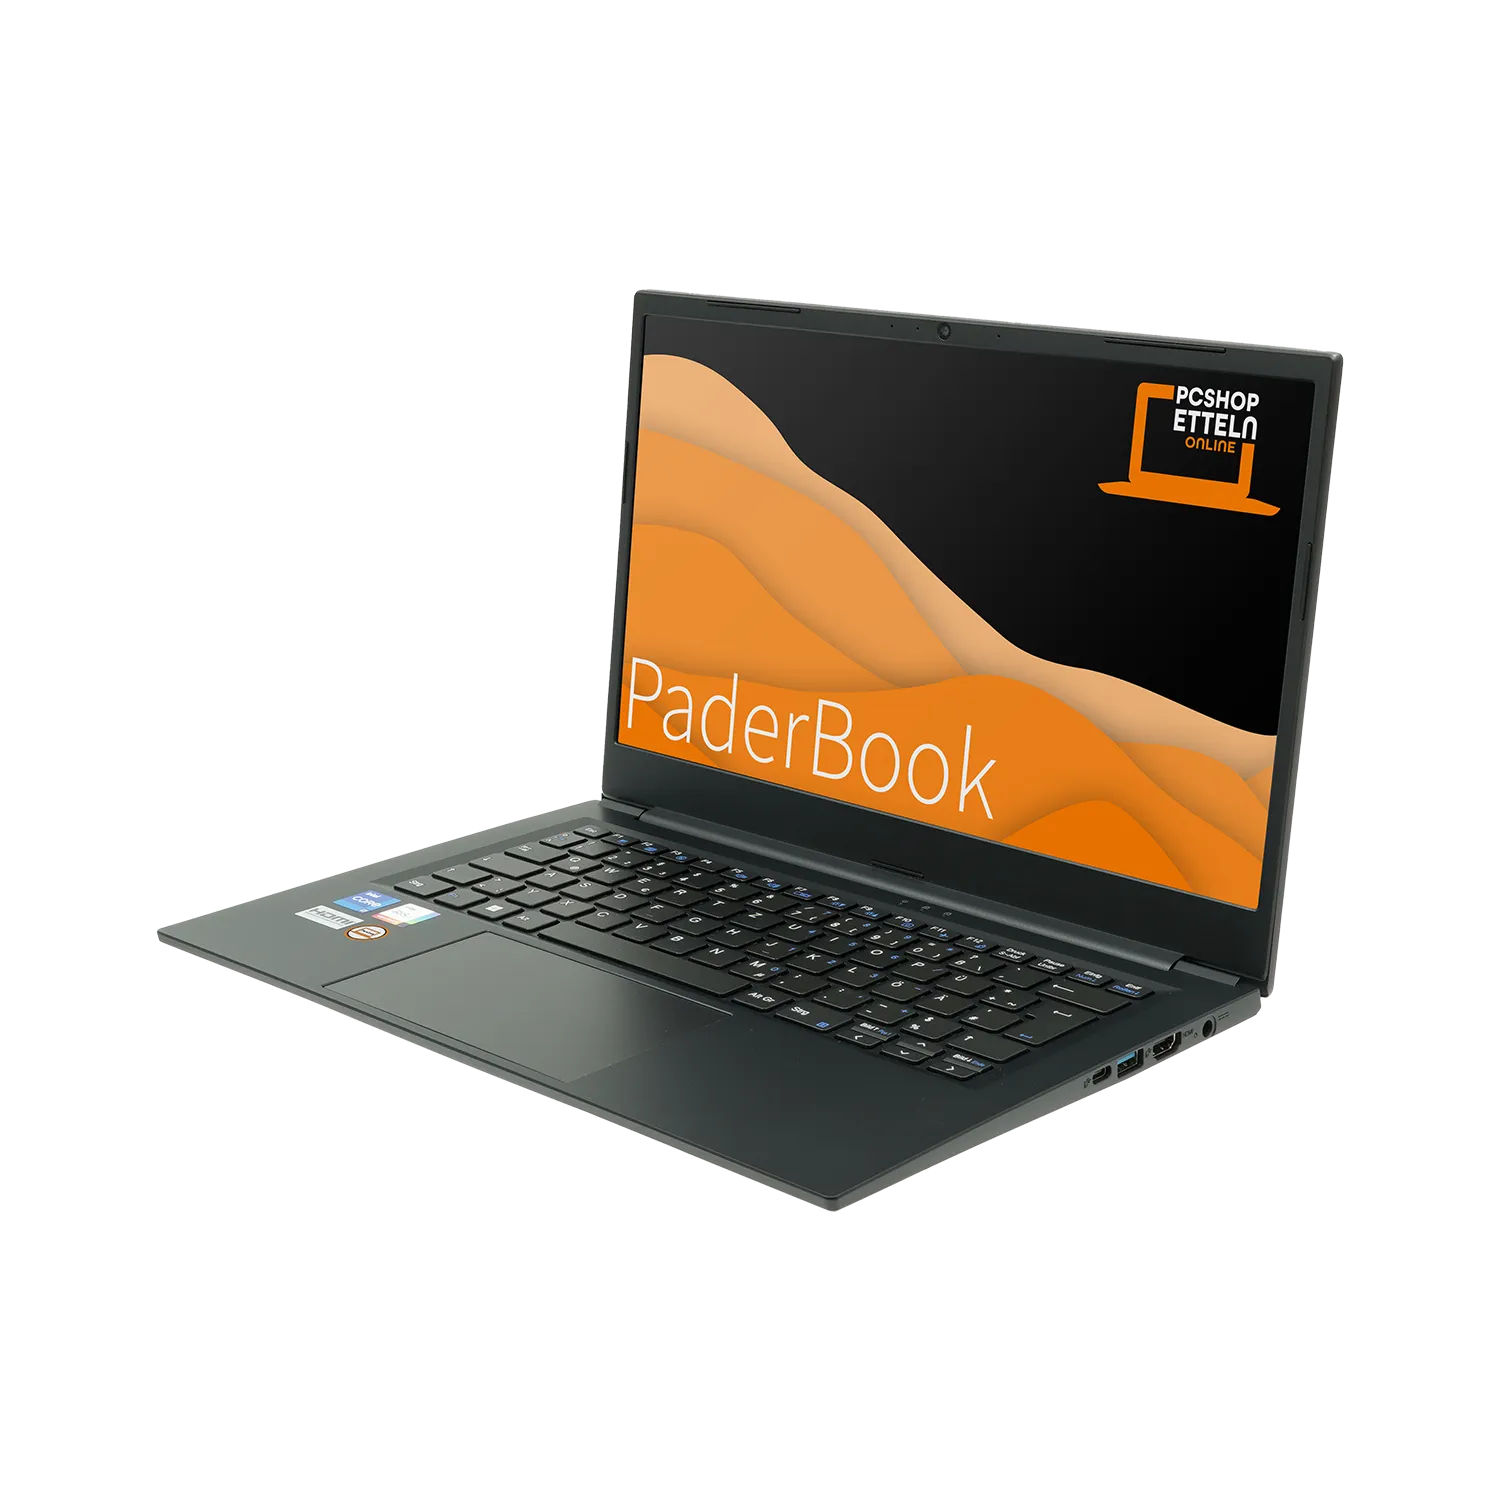 und Pro, Concept 2000 2021 aktiviert, Notebook mit fertig Zoll SSD, installiert GB 14 64 GB PADERBOOK Schwarz i74, Display, RAM, Office